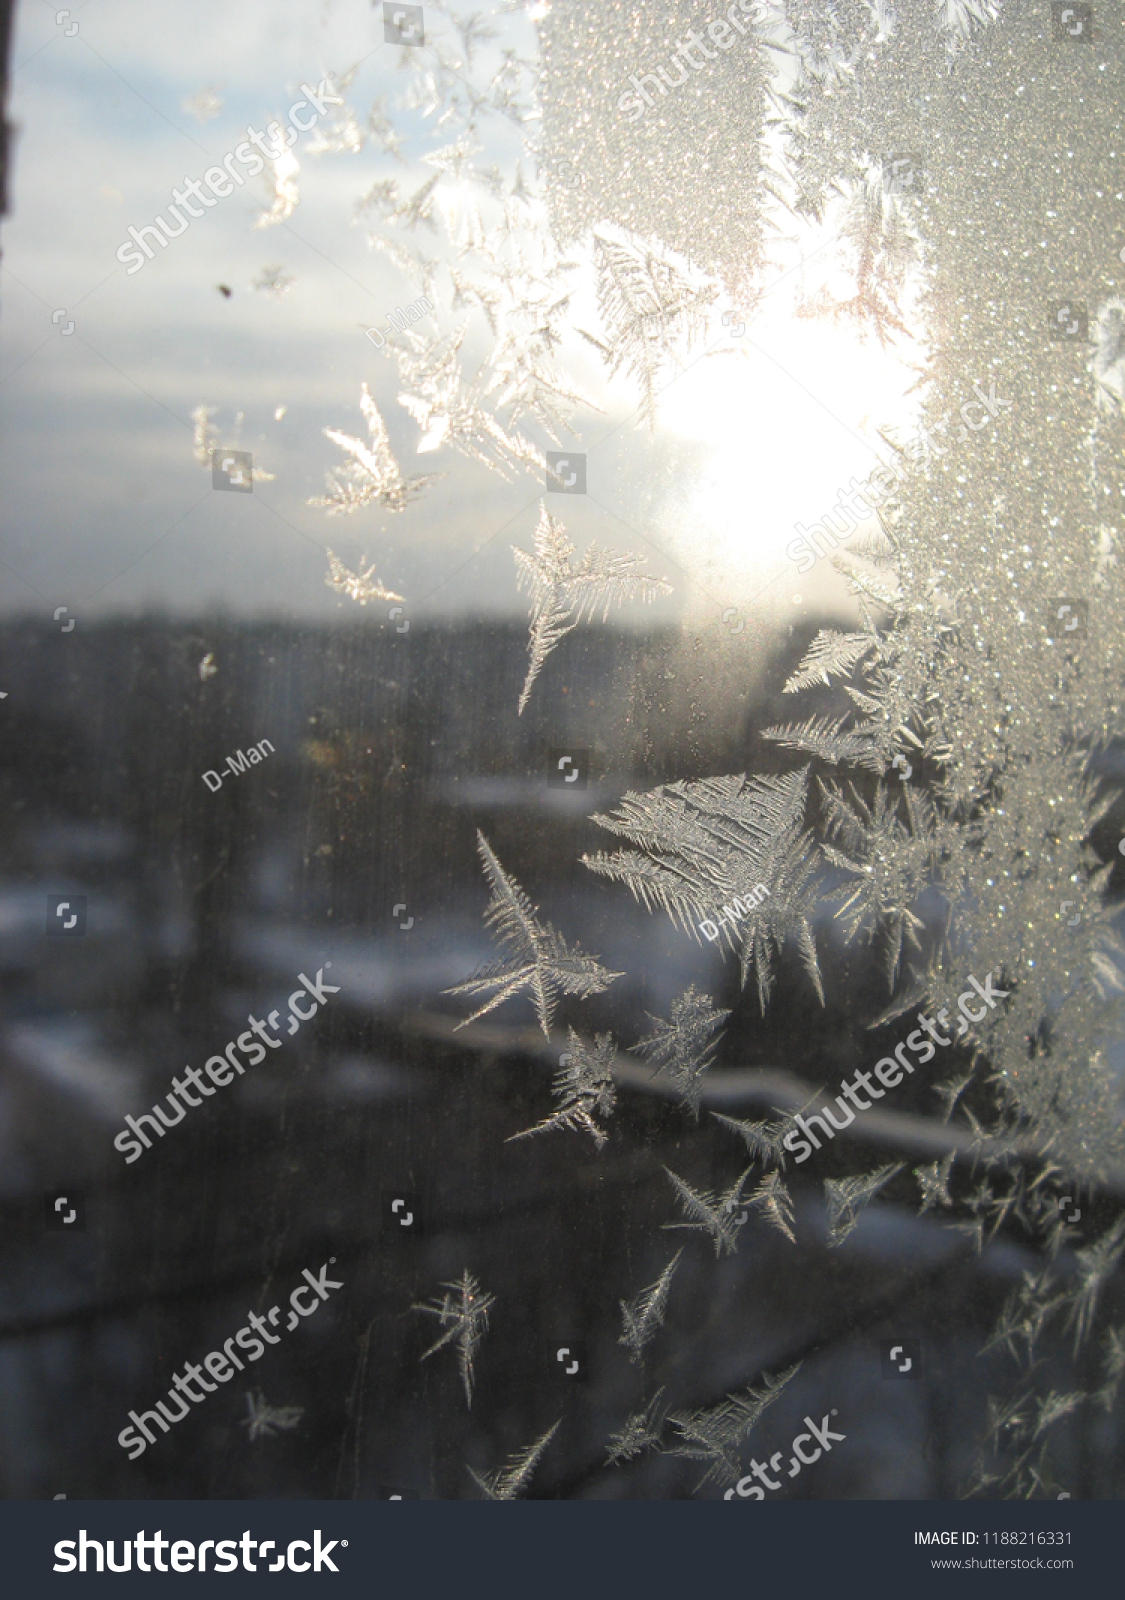 Winter, frozen window #1188216331